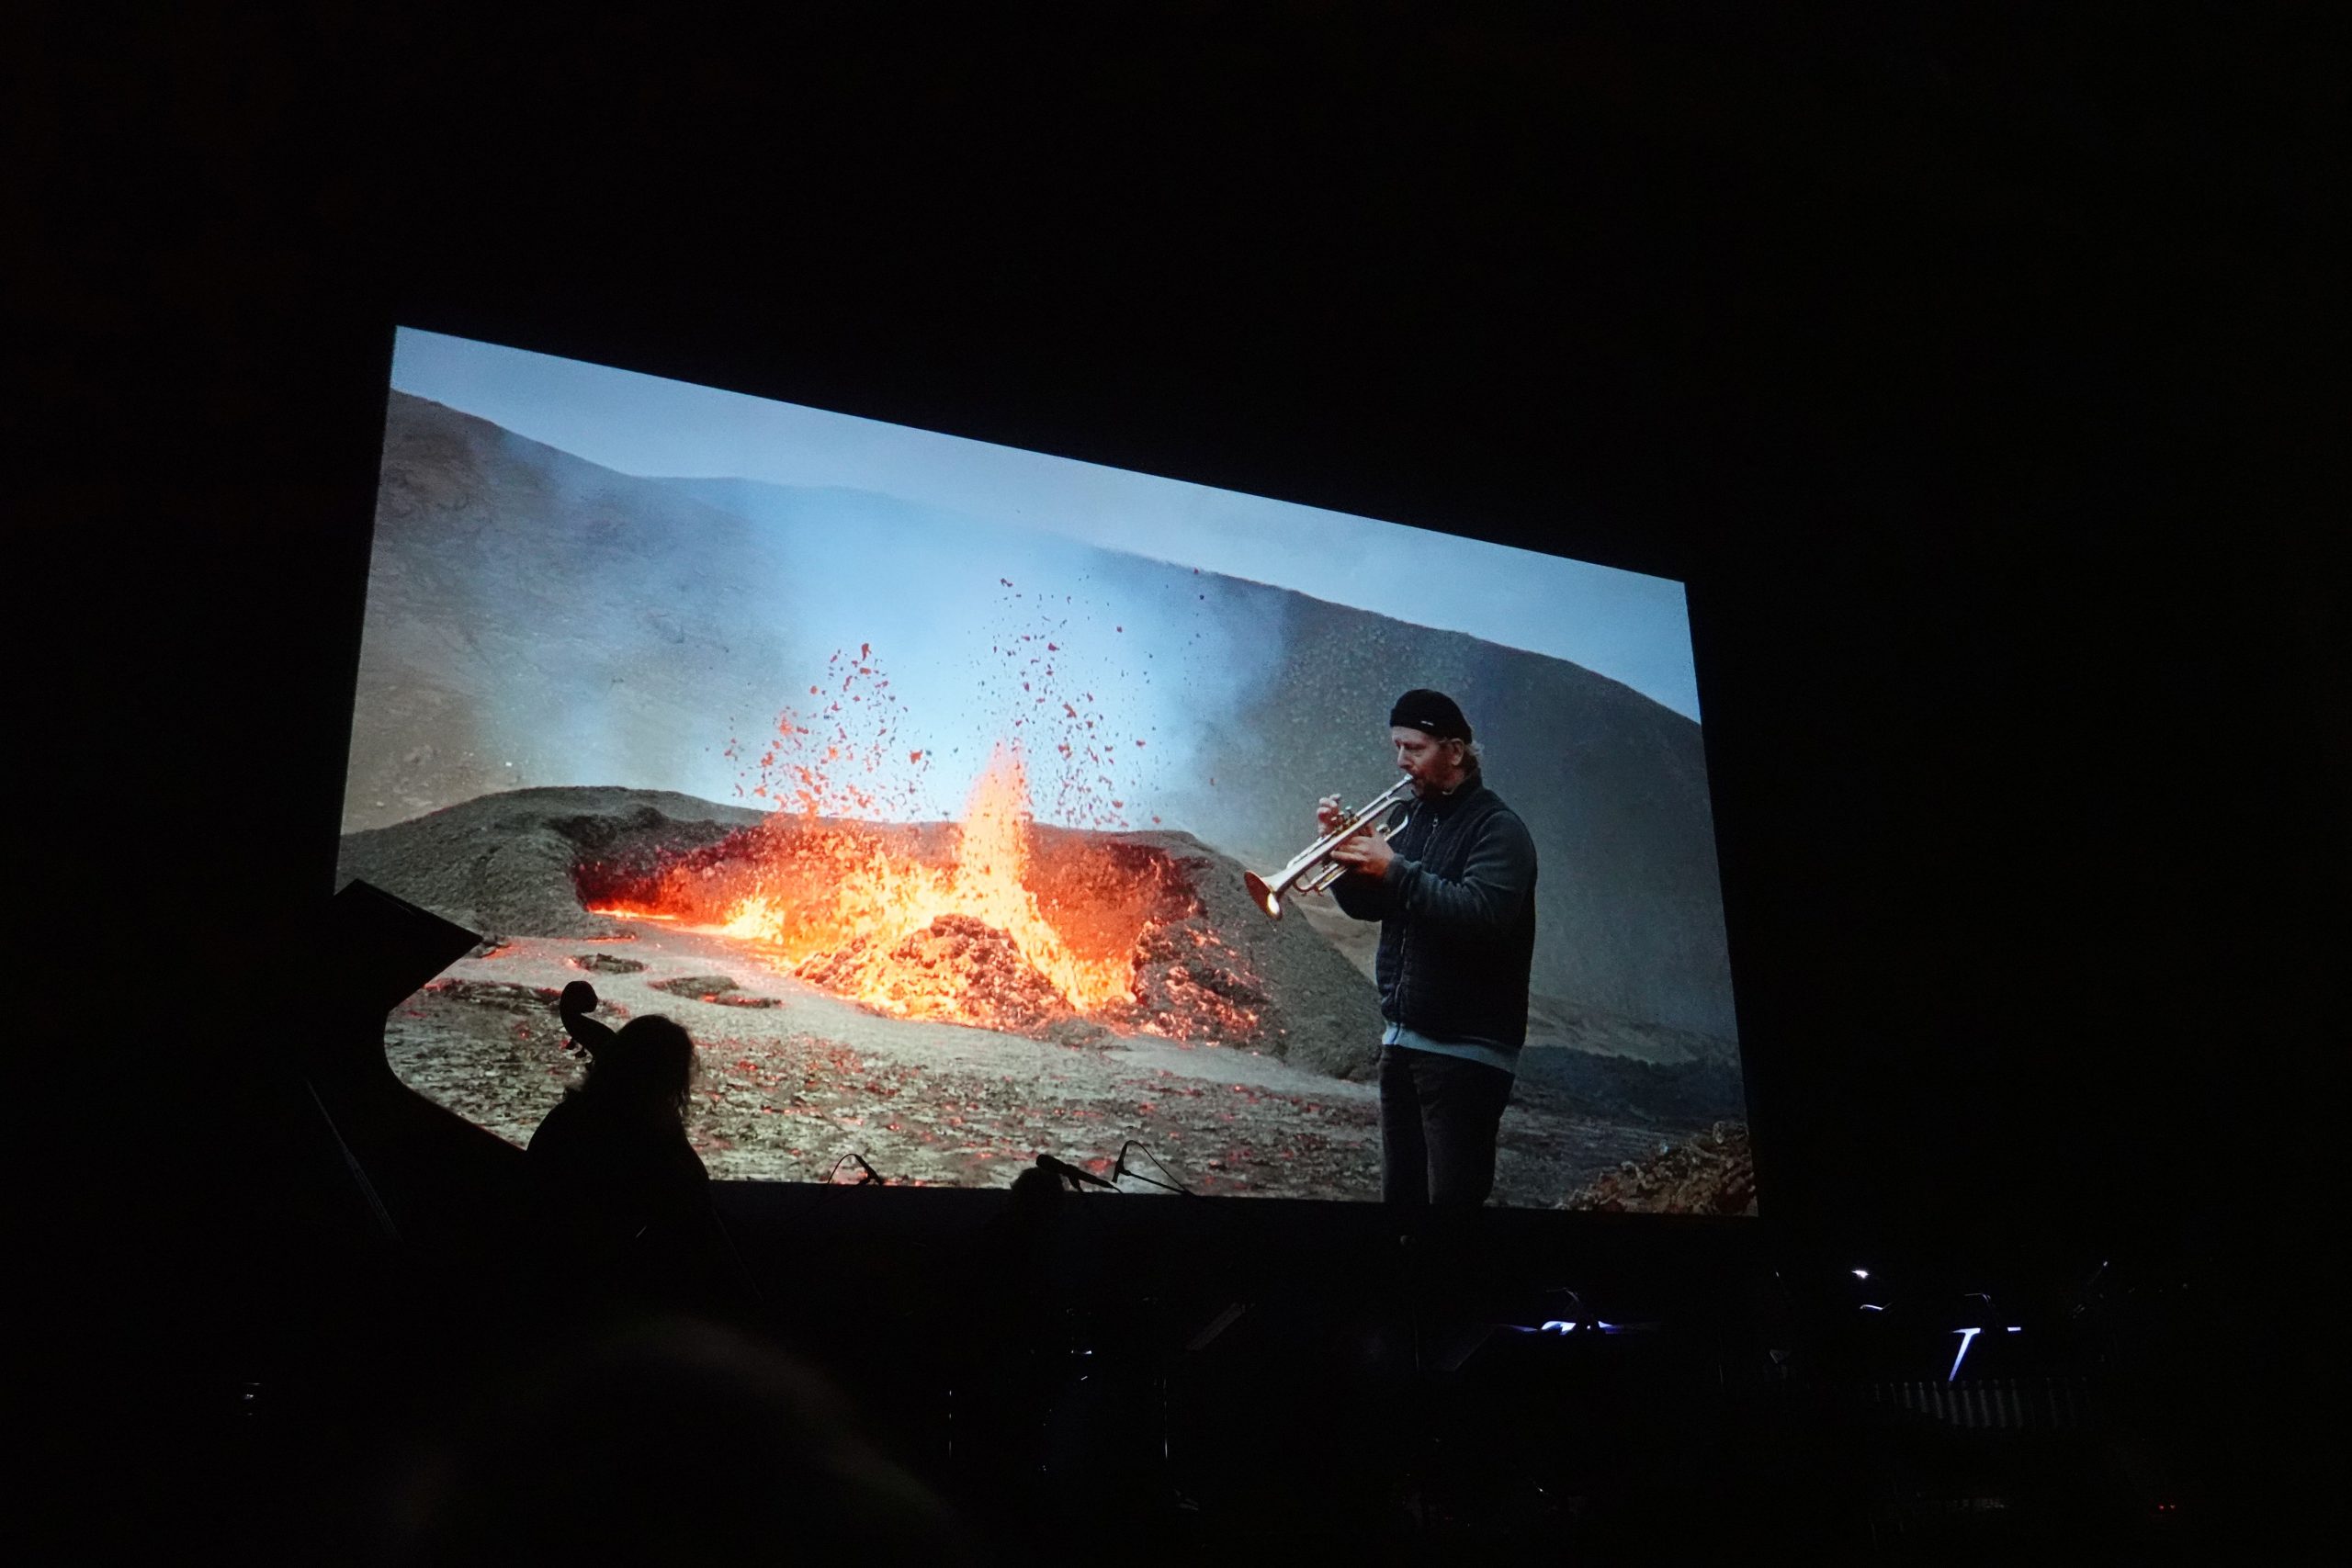 Blick zur Leinwand, wo Musiker vor einem brodelnden Vulkankrater spielt